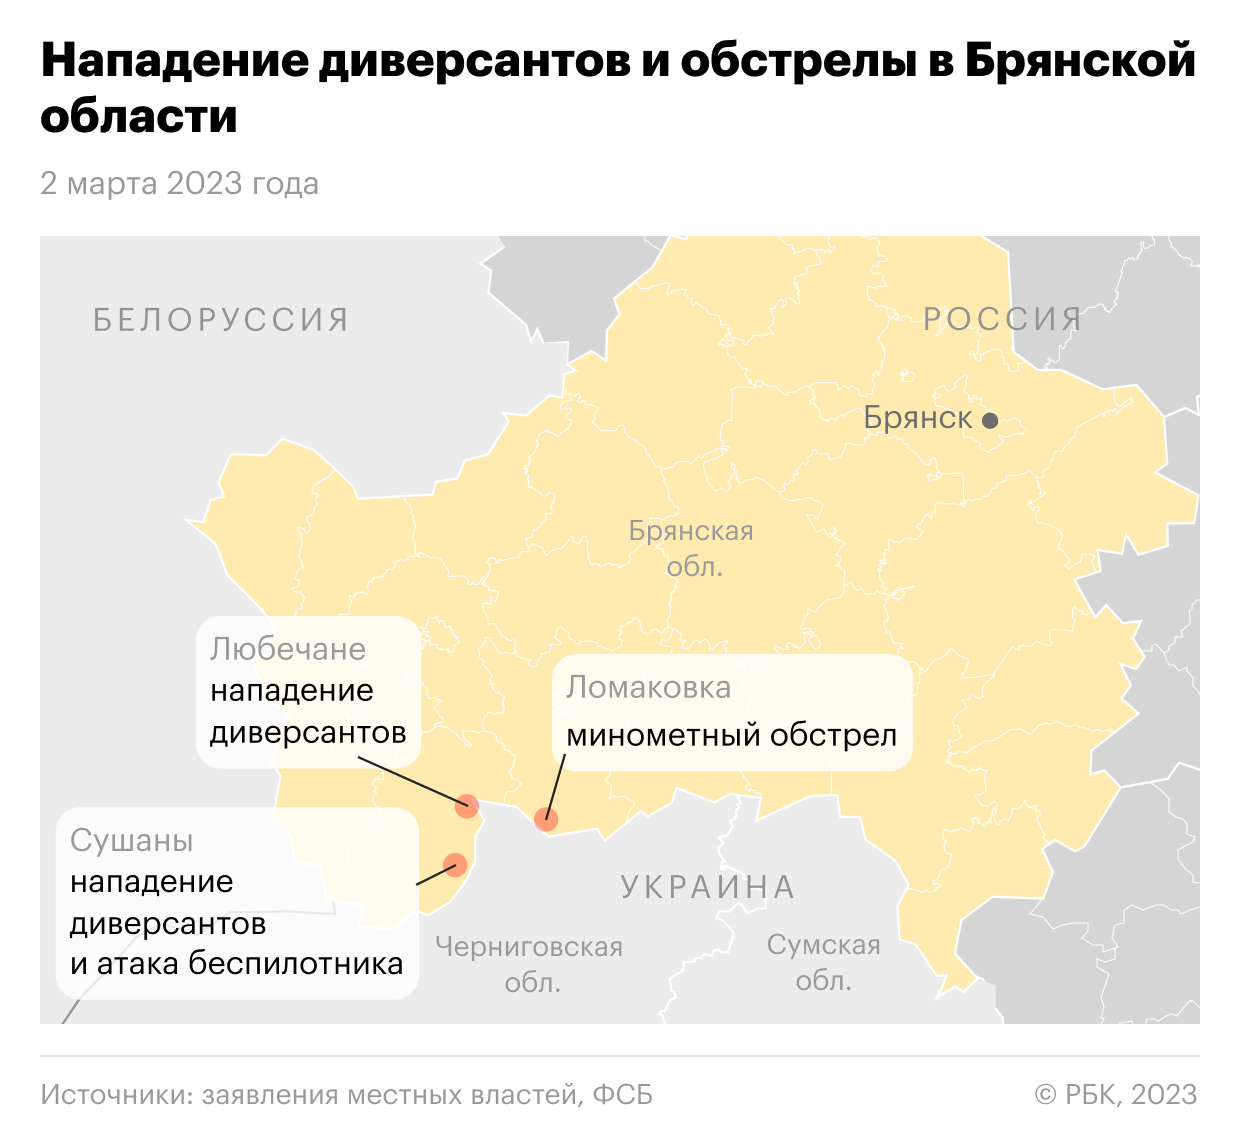 Губернатор сообщил об отражении атаки диверсантов в Брянской области